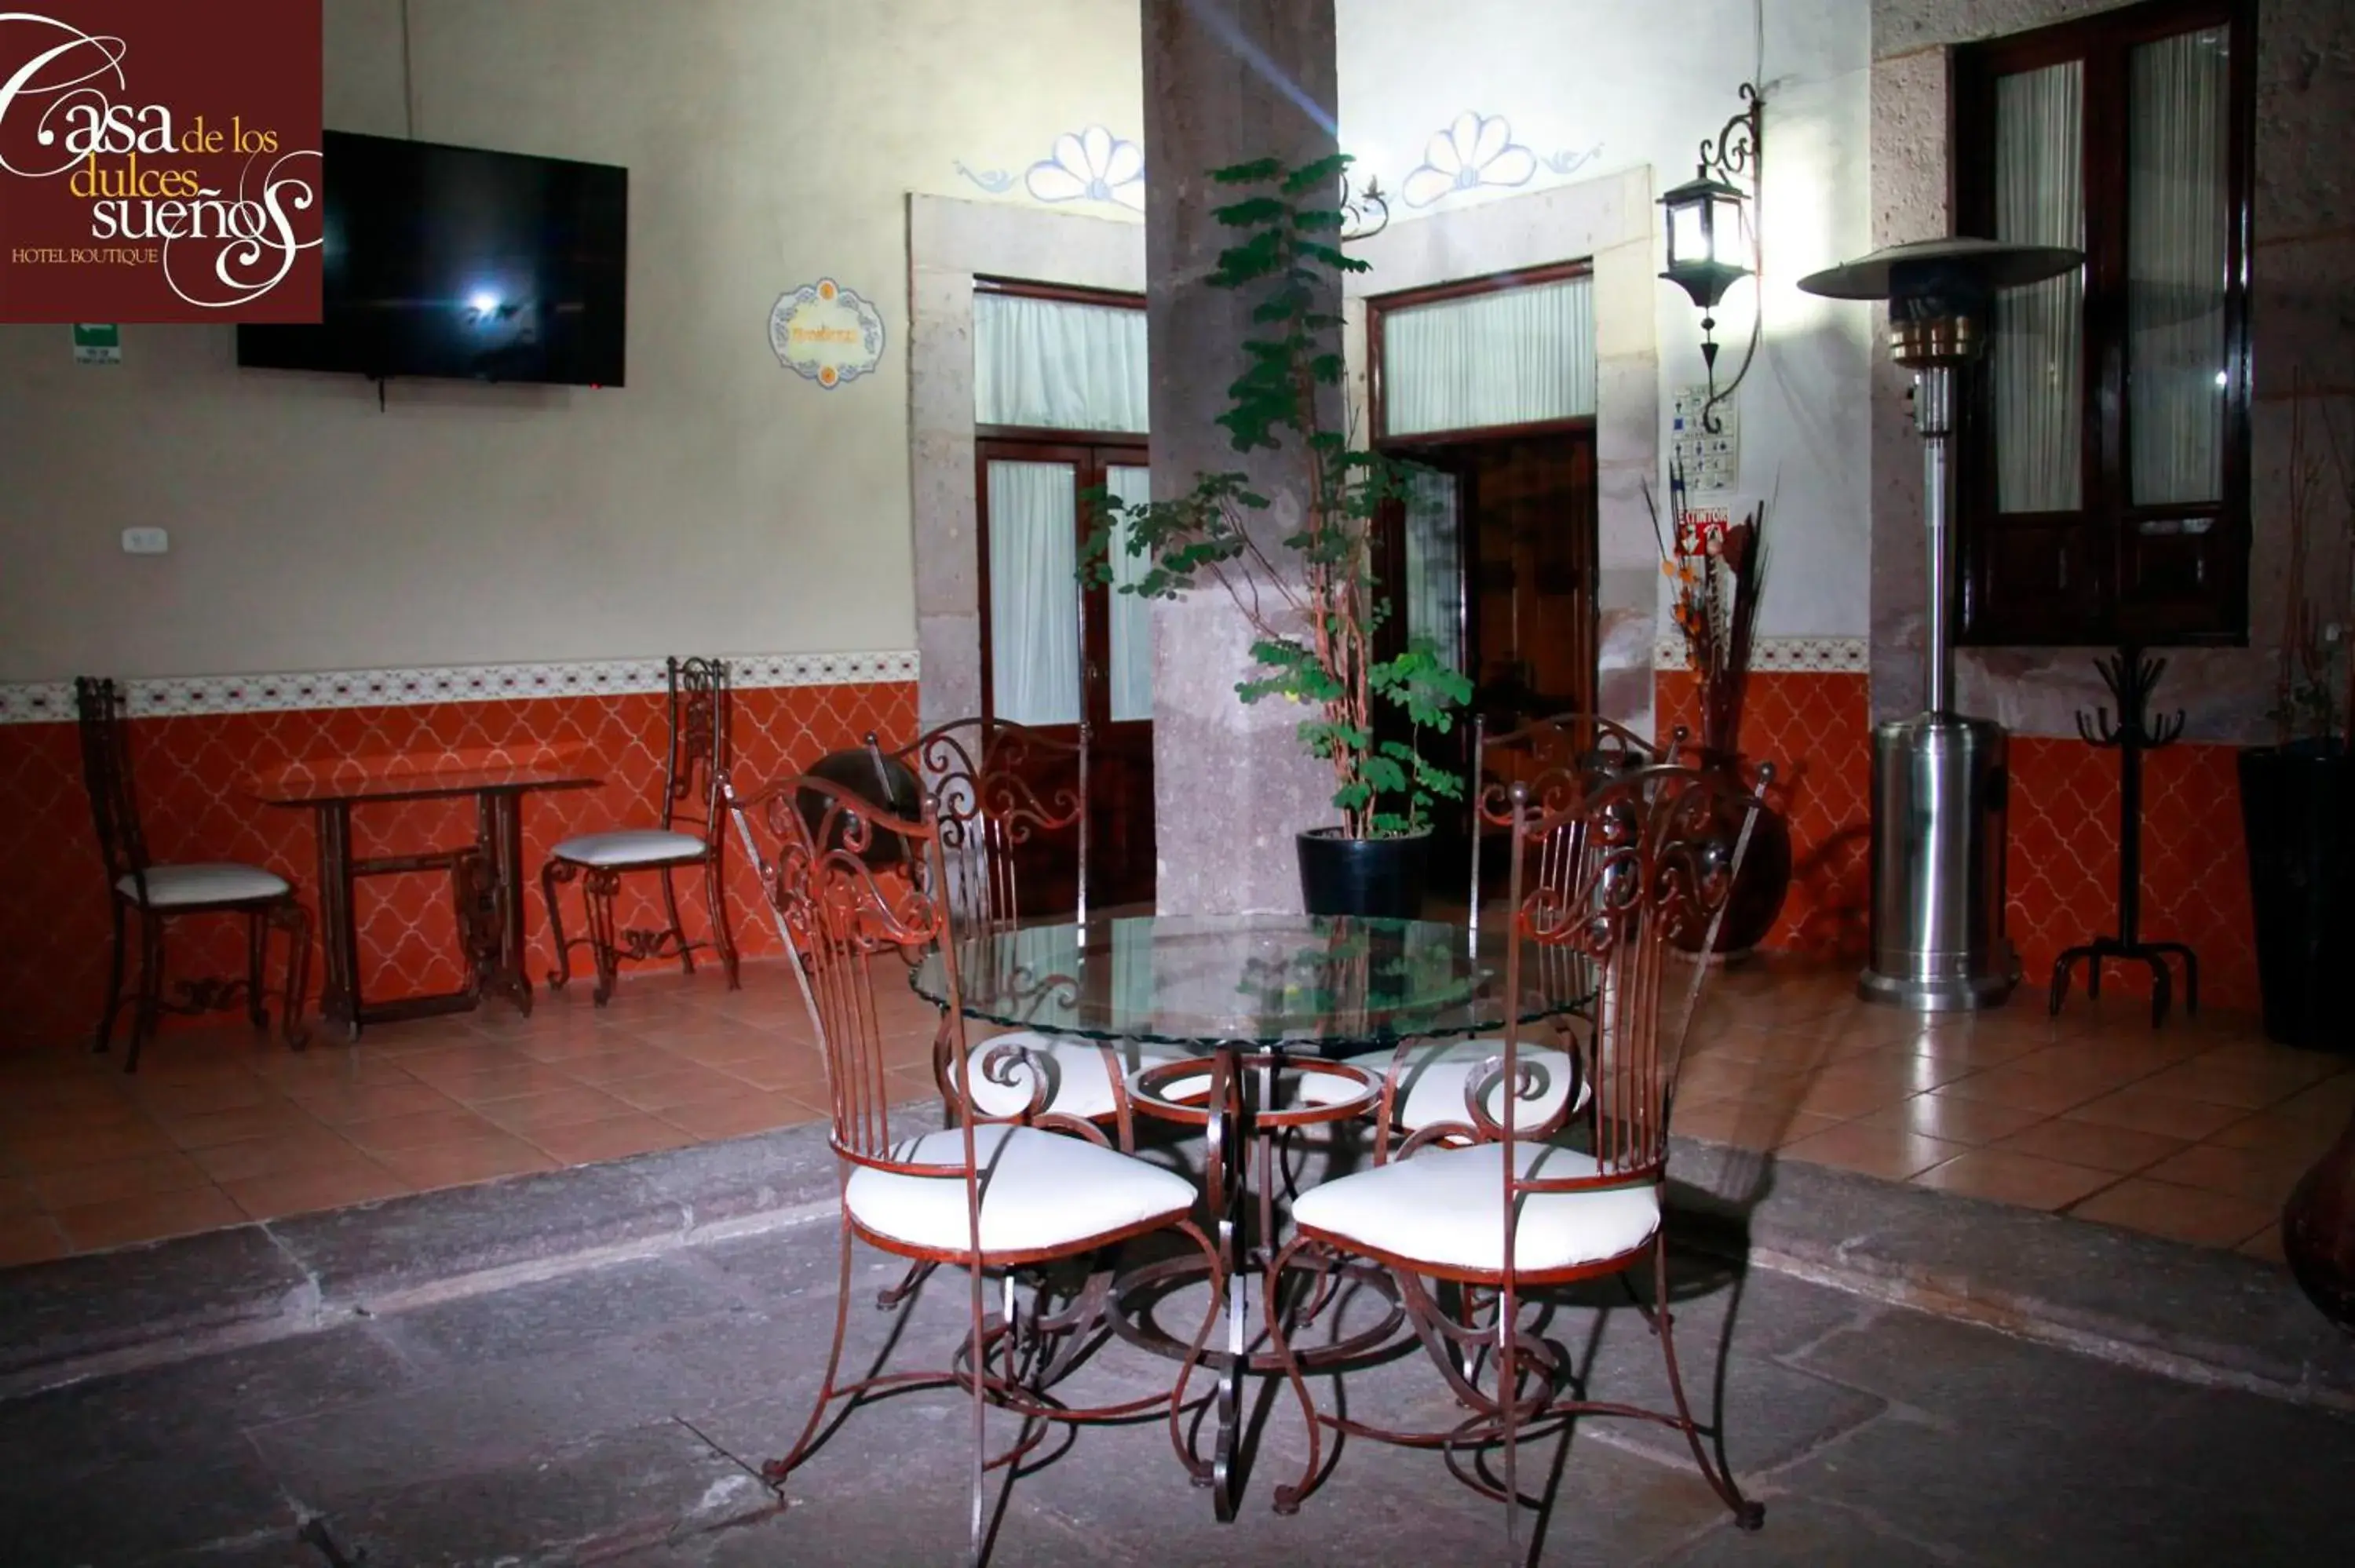 Restaurant/places to eat in Casa de los Dulces Sueños